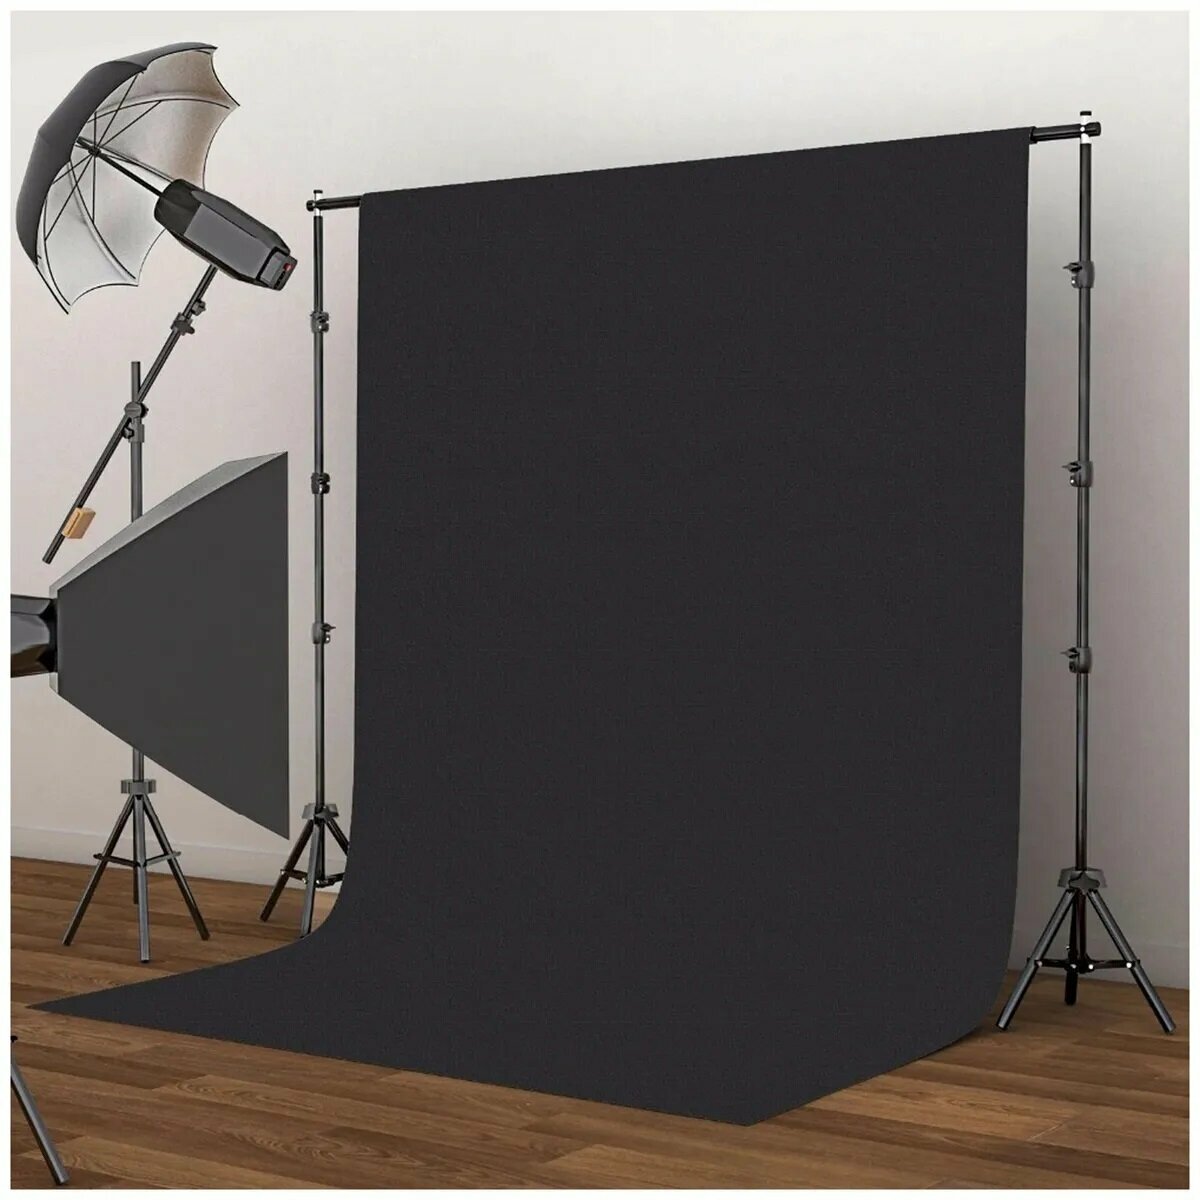 Двусторонний виниловый фотофон 2 х 2 метра / черно-белый баннер 200 х 200 см / баннер блэкбэк